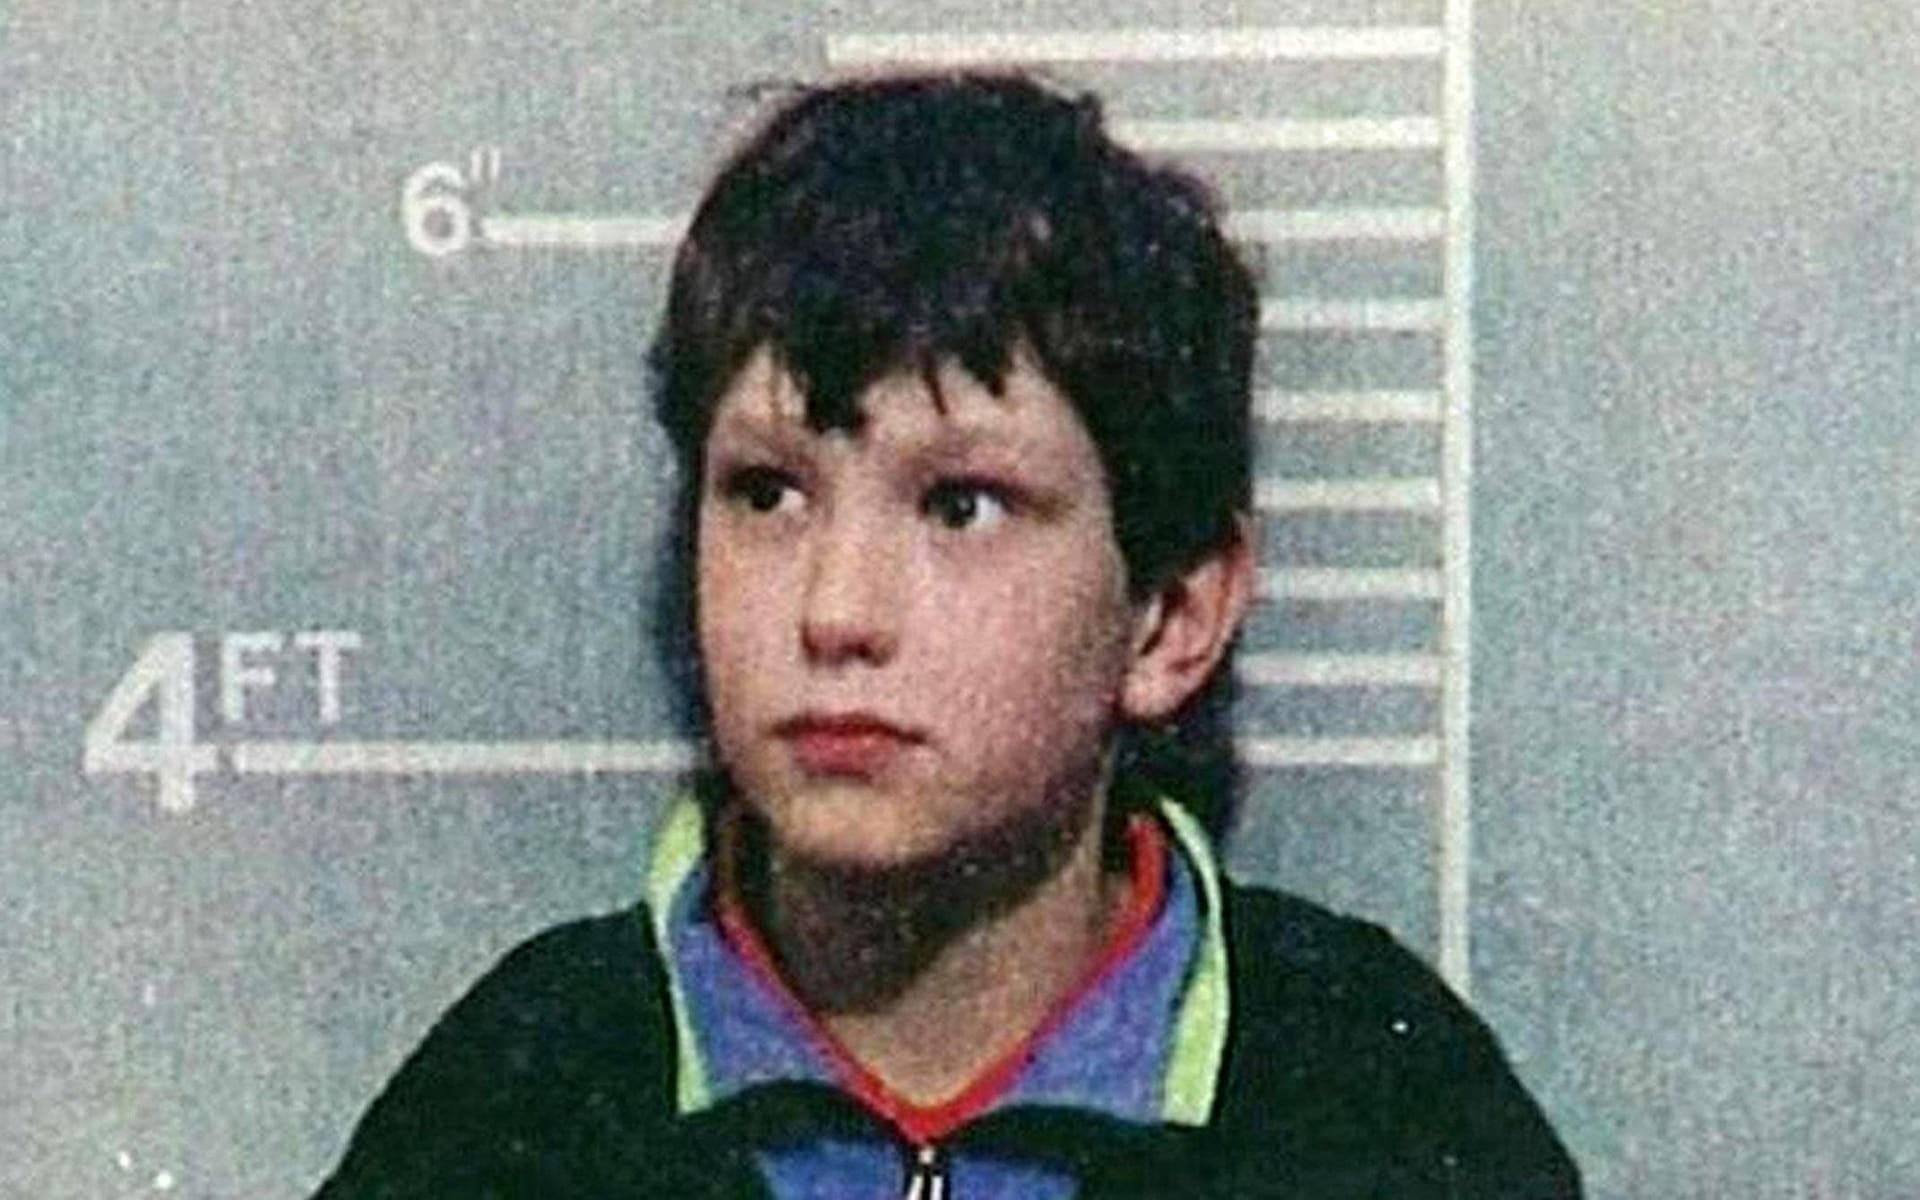 James Bulger killer Jon Venables to face secret trial over indecent images of children